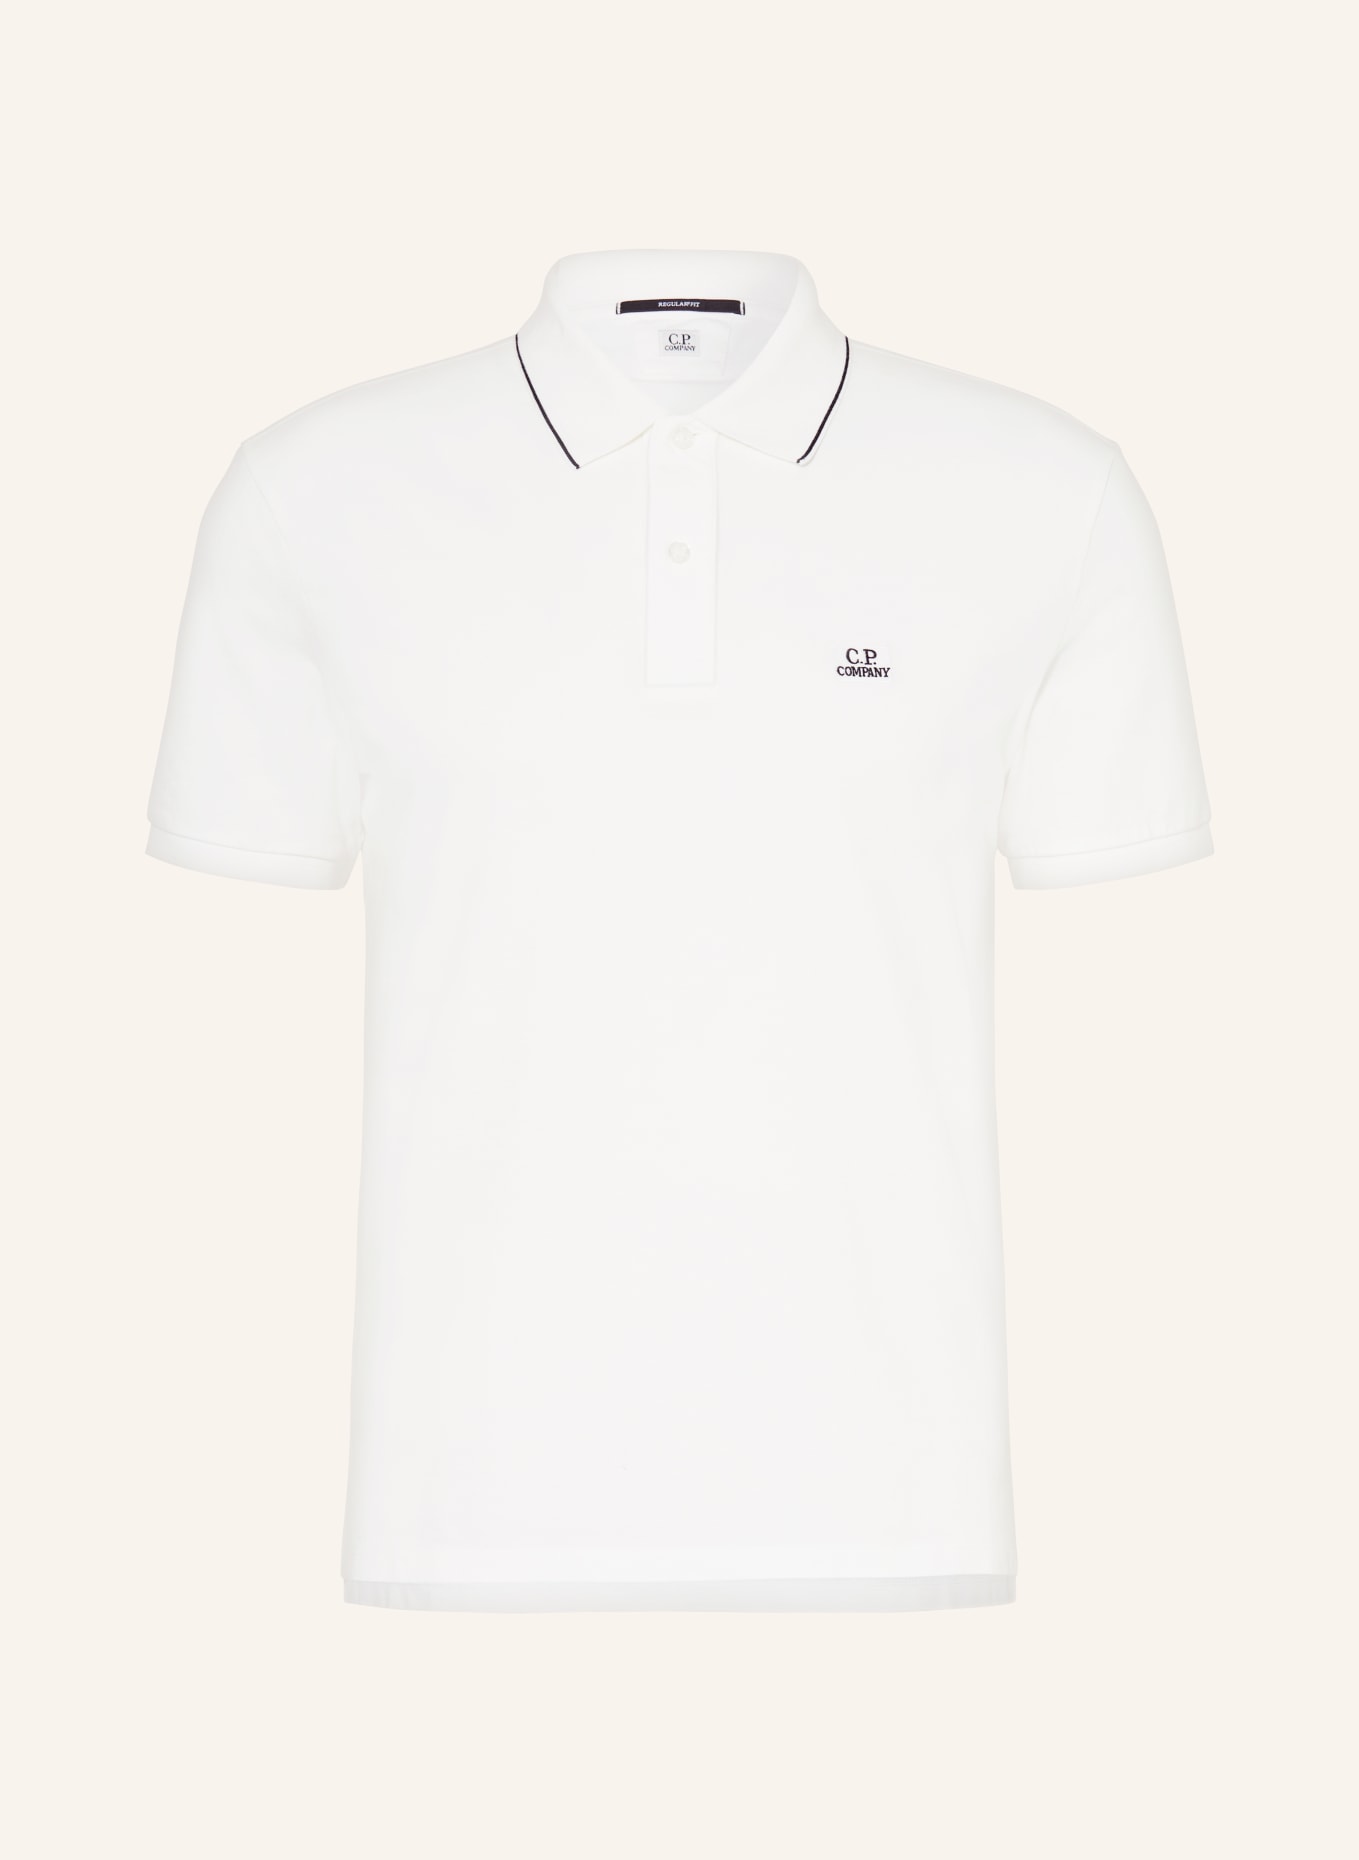 C.P. COMPANY Piqué polo shirt regular fit, Color: WHITE (Image 1)